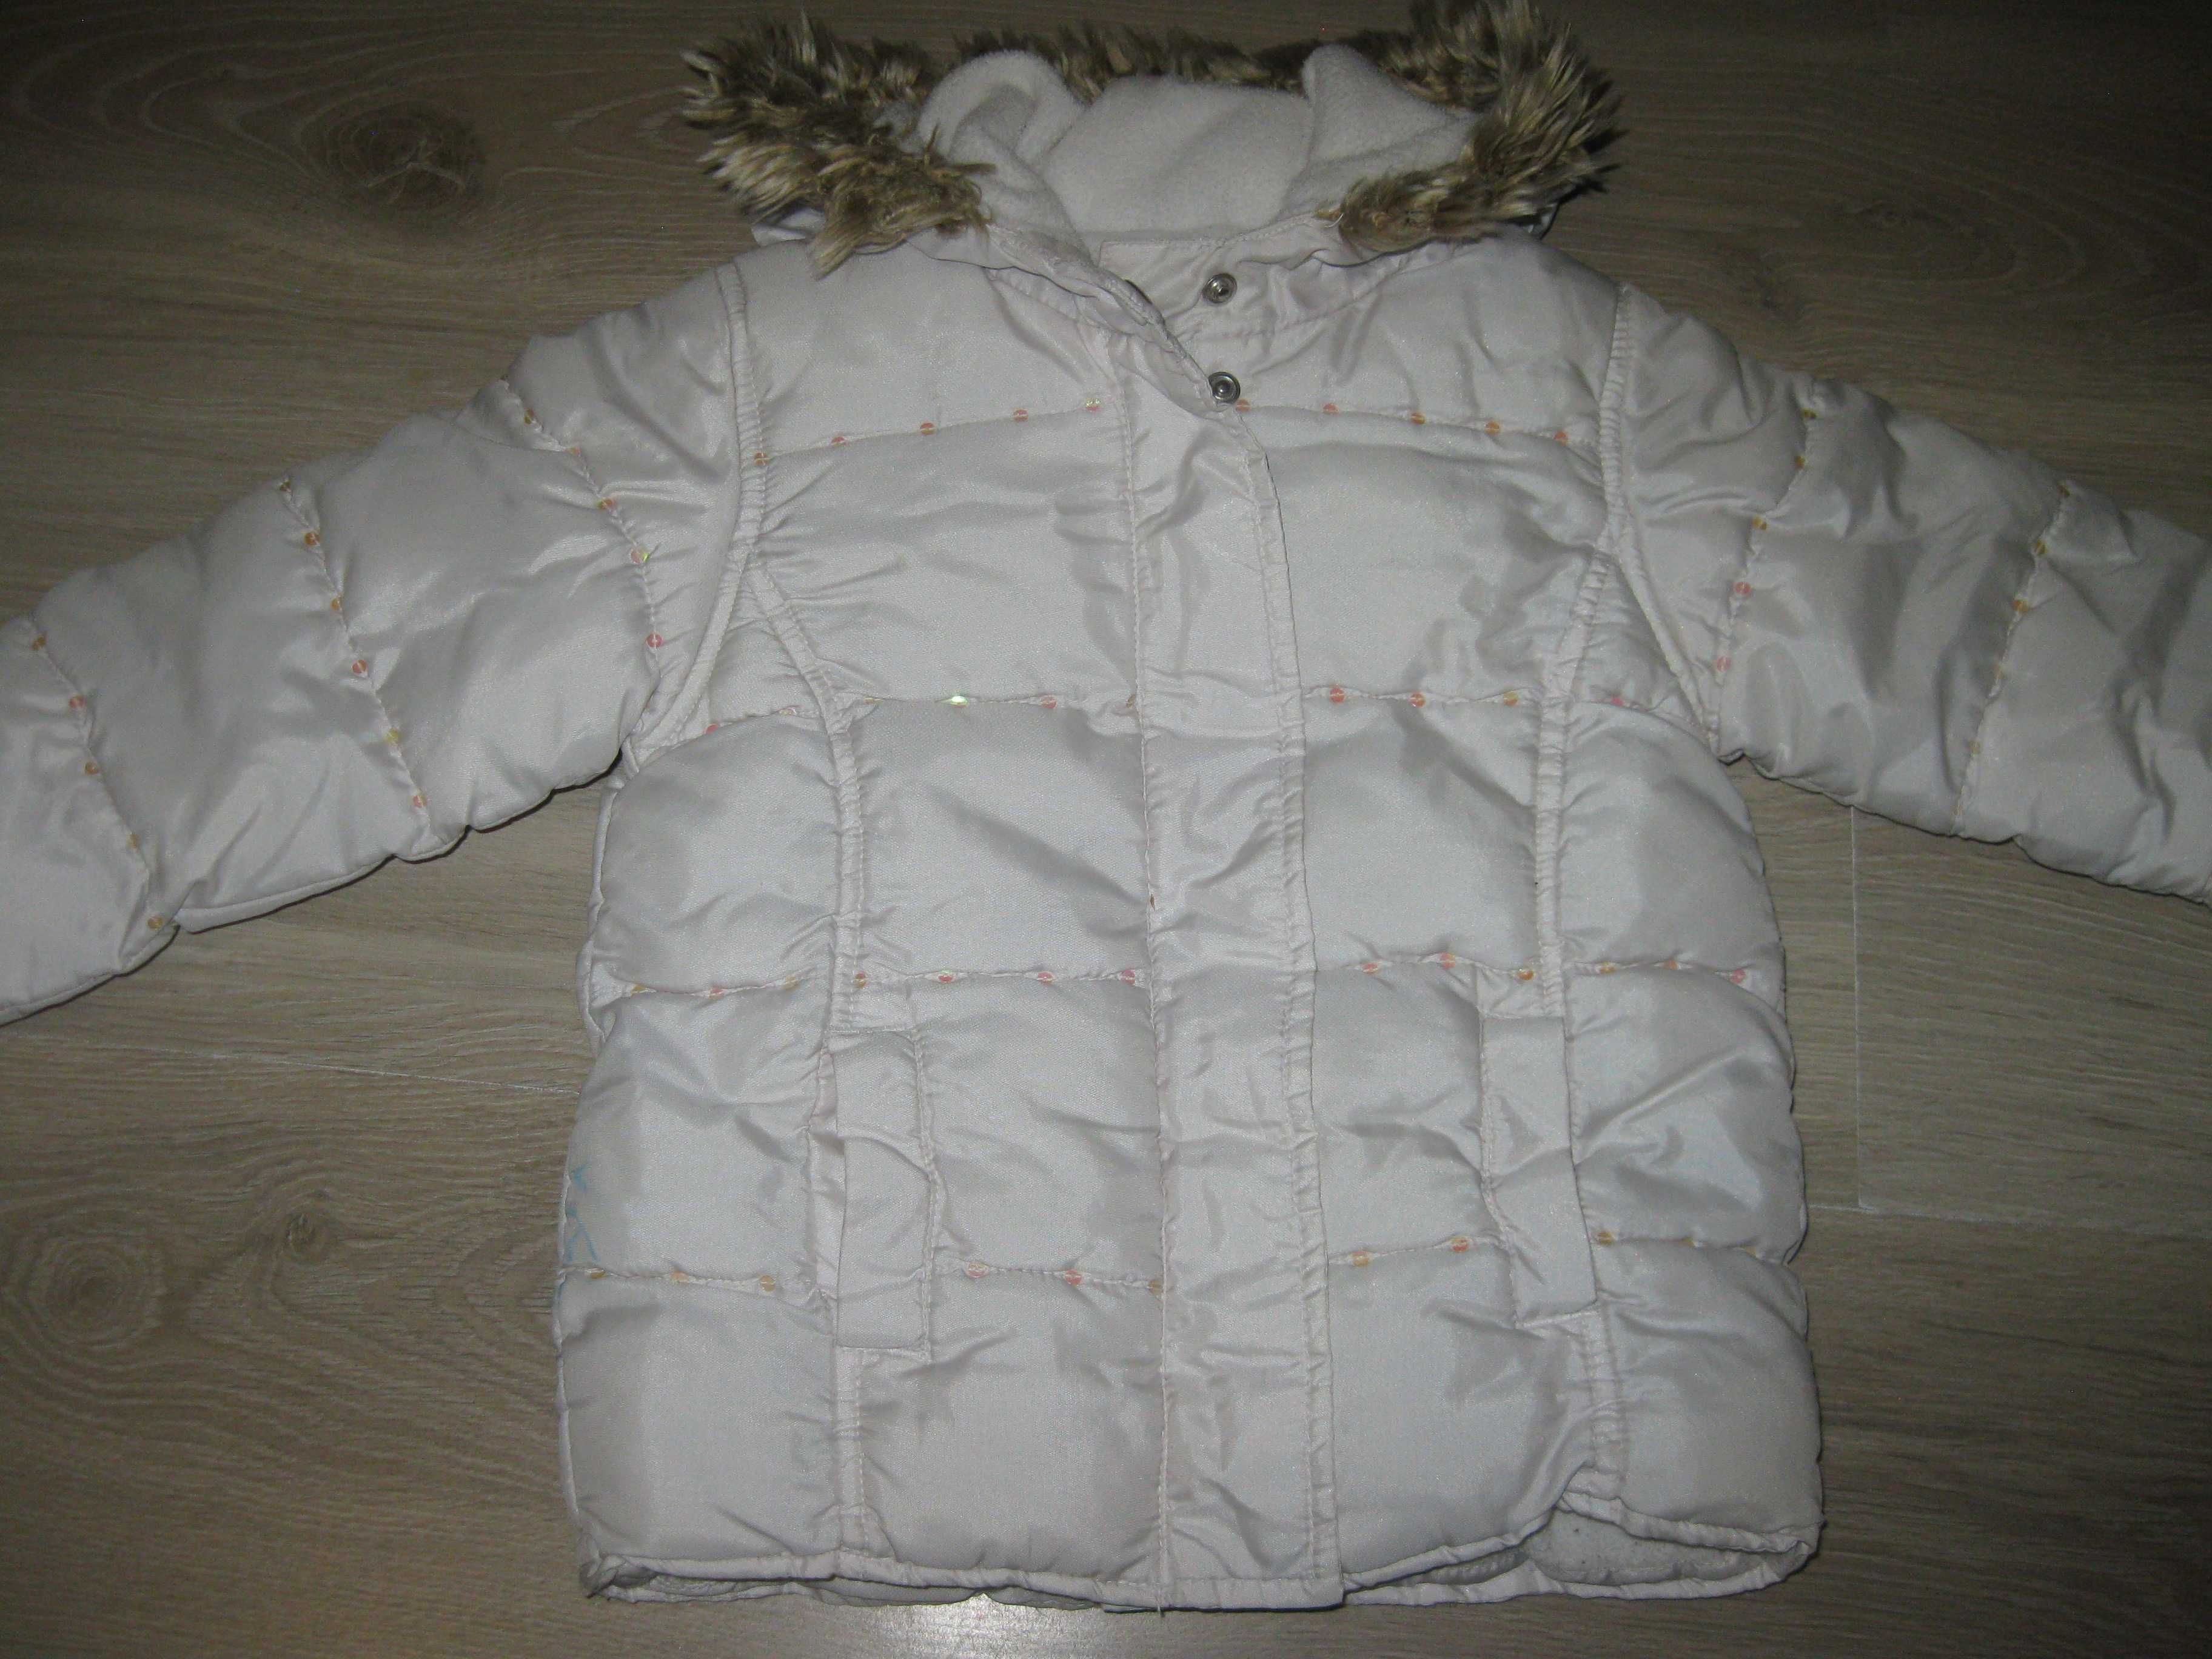 Fabric kurtka zimowa rozmiar 98 cm 2-3 latka